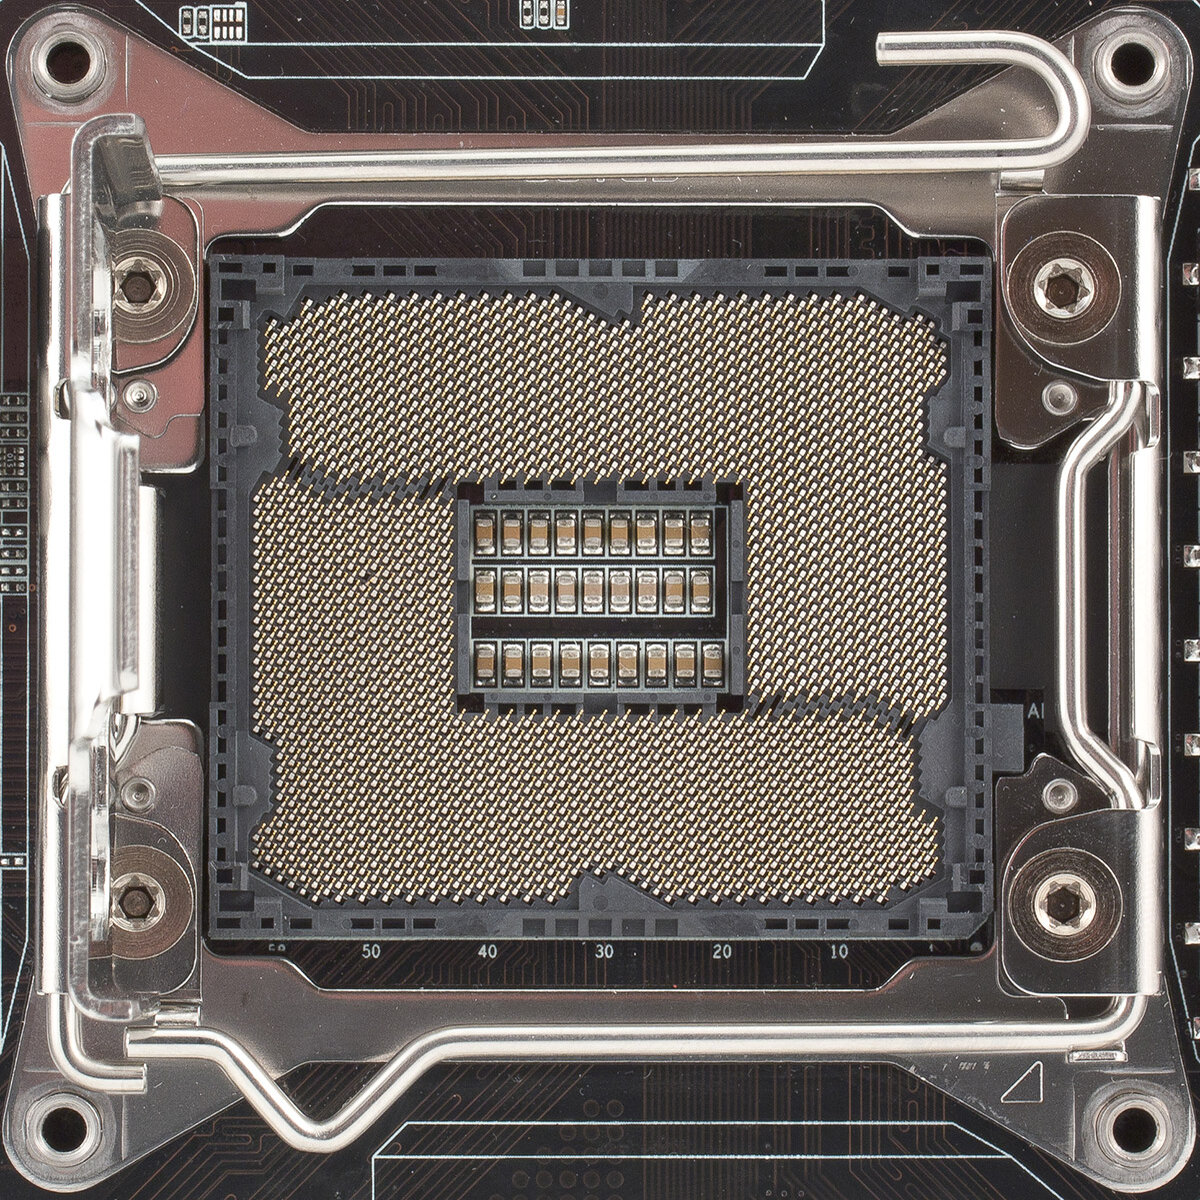 Сокет процессора это. Сокет 2011 v3. LGA 2011-3 сокет. Xeon 2011v3 сокет. LGA 2011 v3 сокет погнутый.